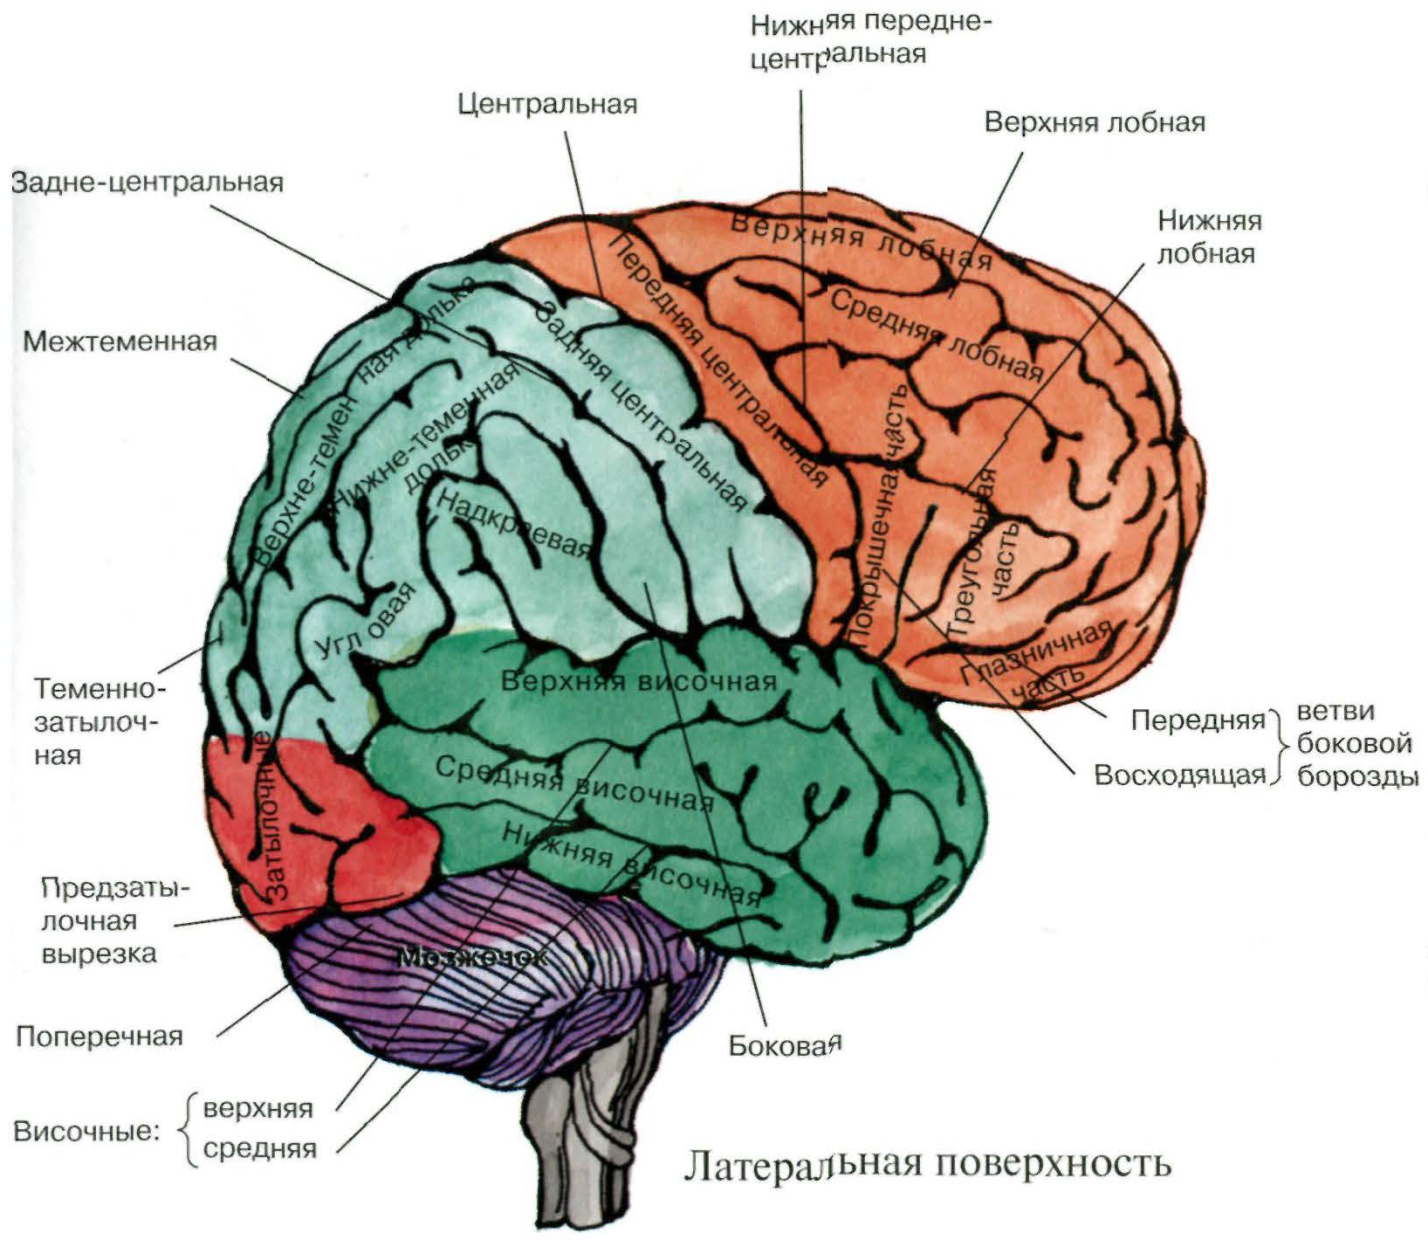 Рассмотрите рисунок с изображением мозга человека. Конвекситальные борозды большого мозга. Теменно-затылочная область мозга. Конвекситальные отделы лобных долей мозга это.